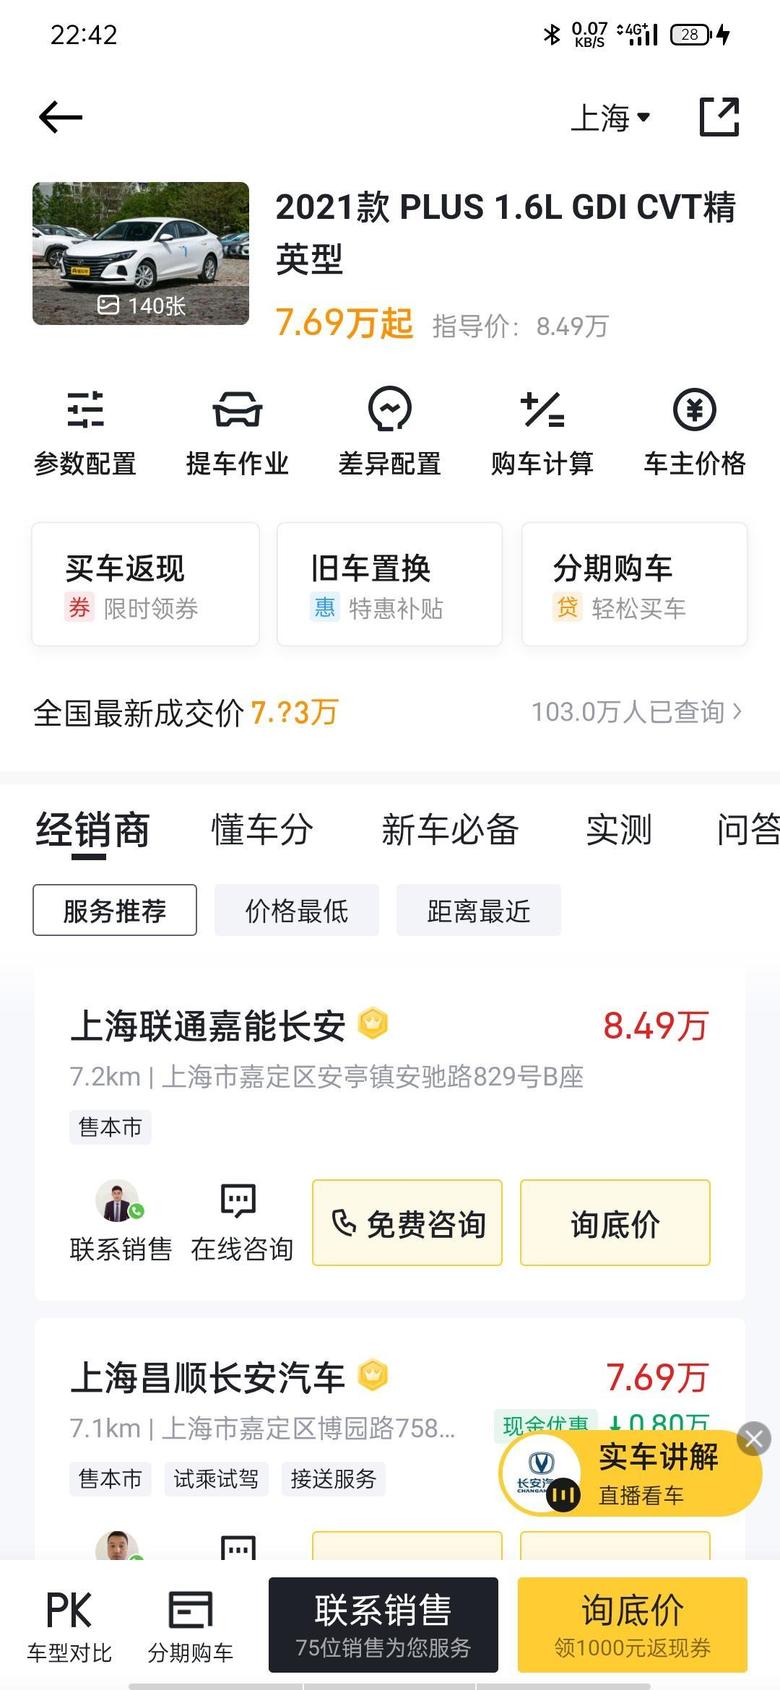 逸动 ?晒晒价格我在上海算的落地价格是83000含的3000金融服务费三年免息是贵了还是便宜了